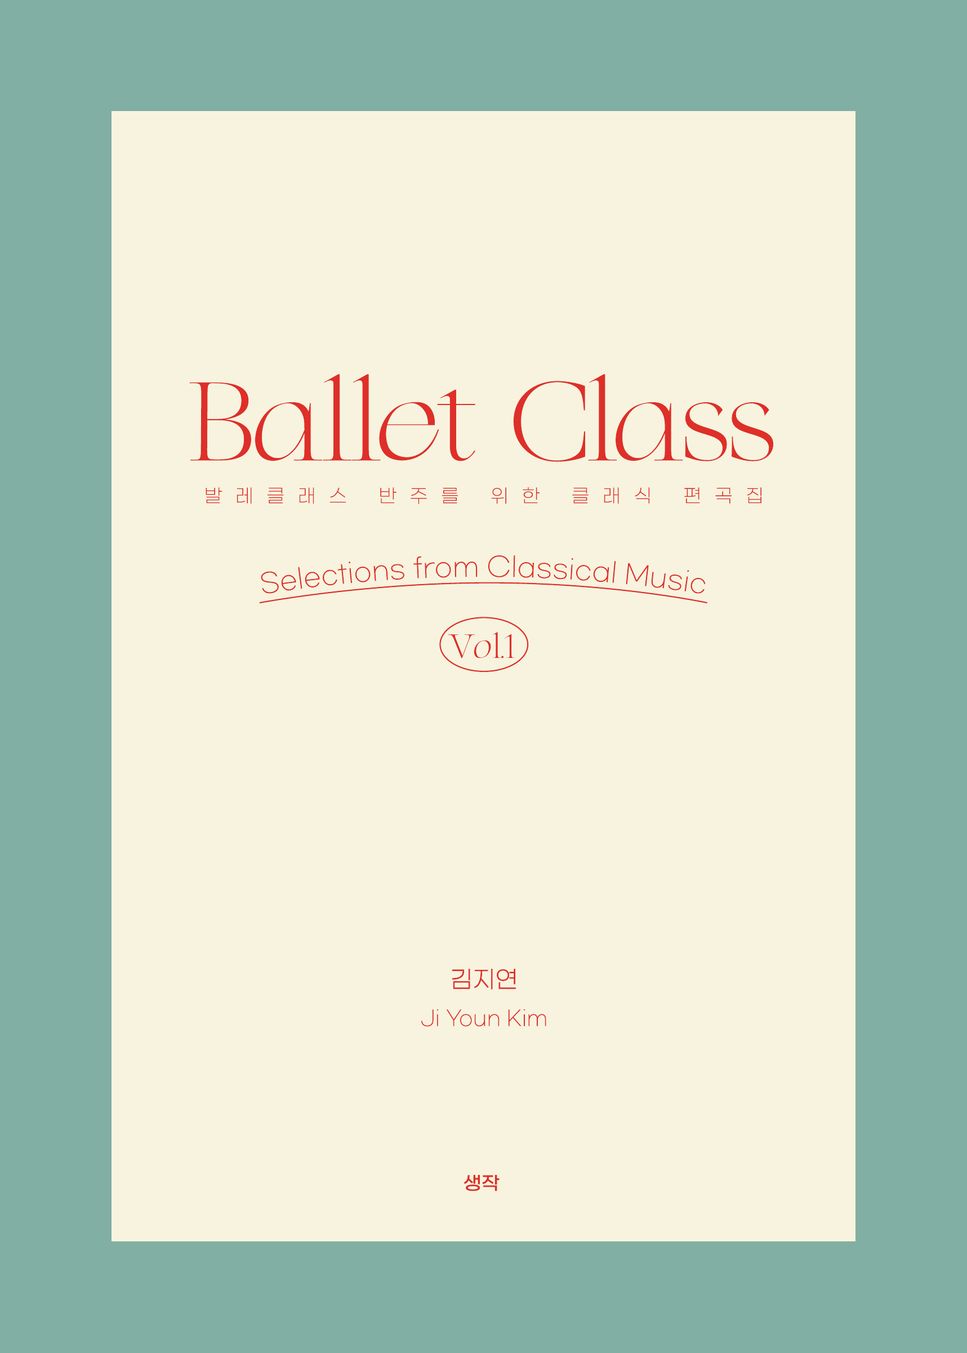 Ji Youn Kim - Ballet Class vol. 1 - 5. Tendu 2